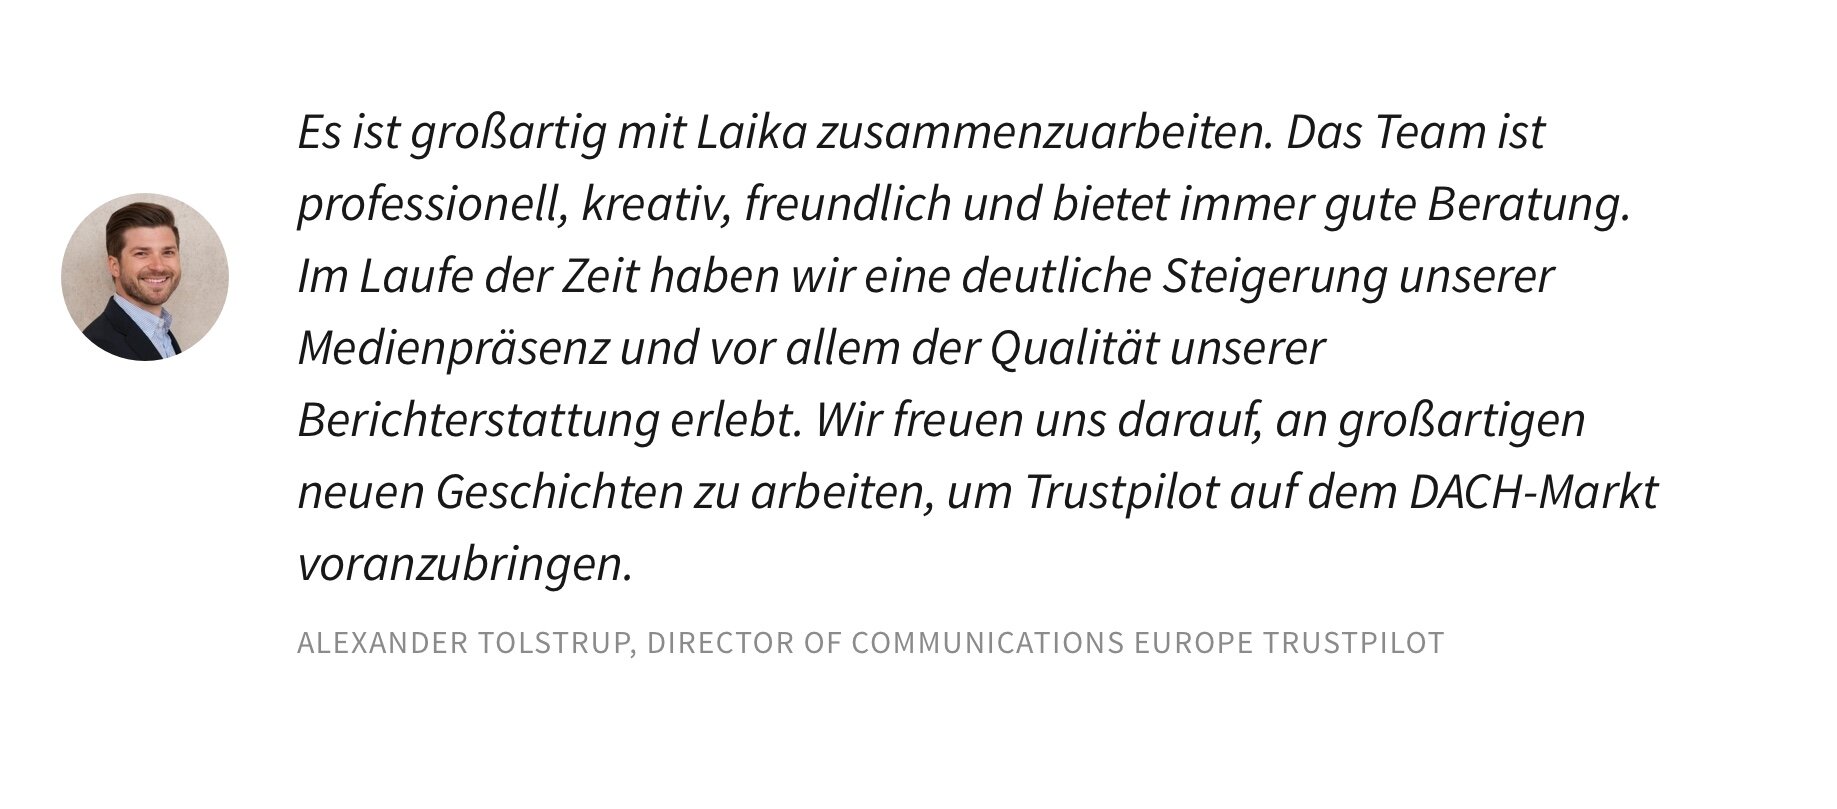 quote-trustpilot-german.jpg